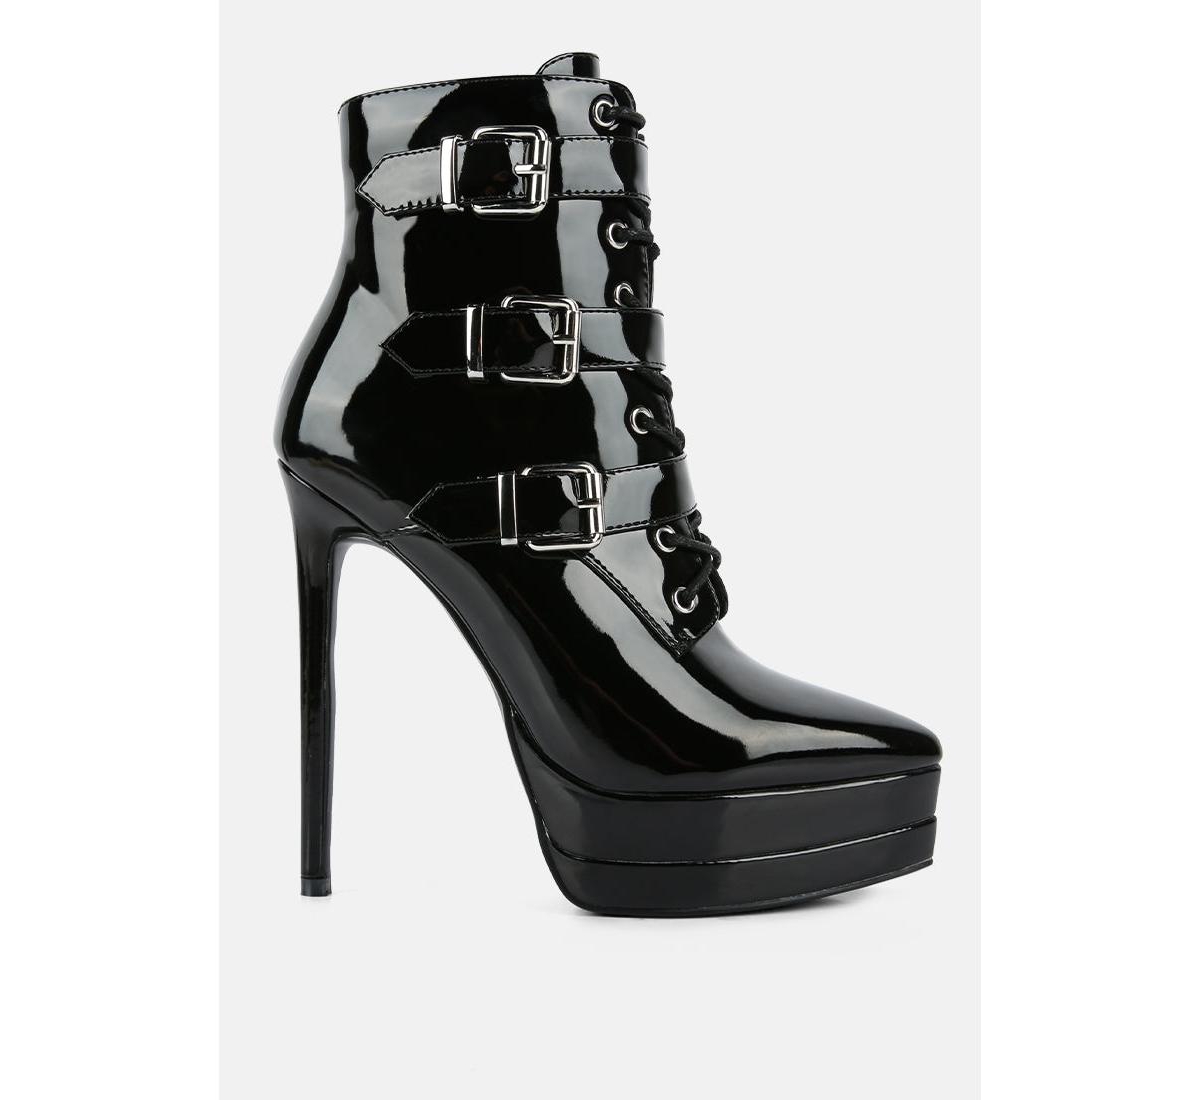 gangup high heeled stiletto boots - Latte